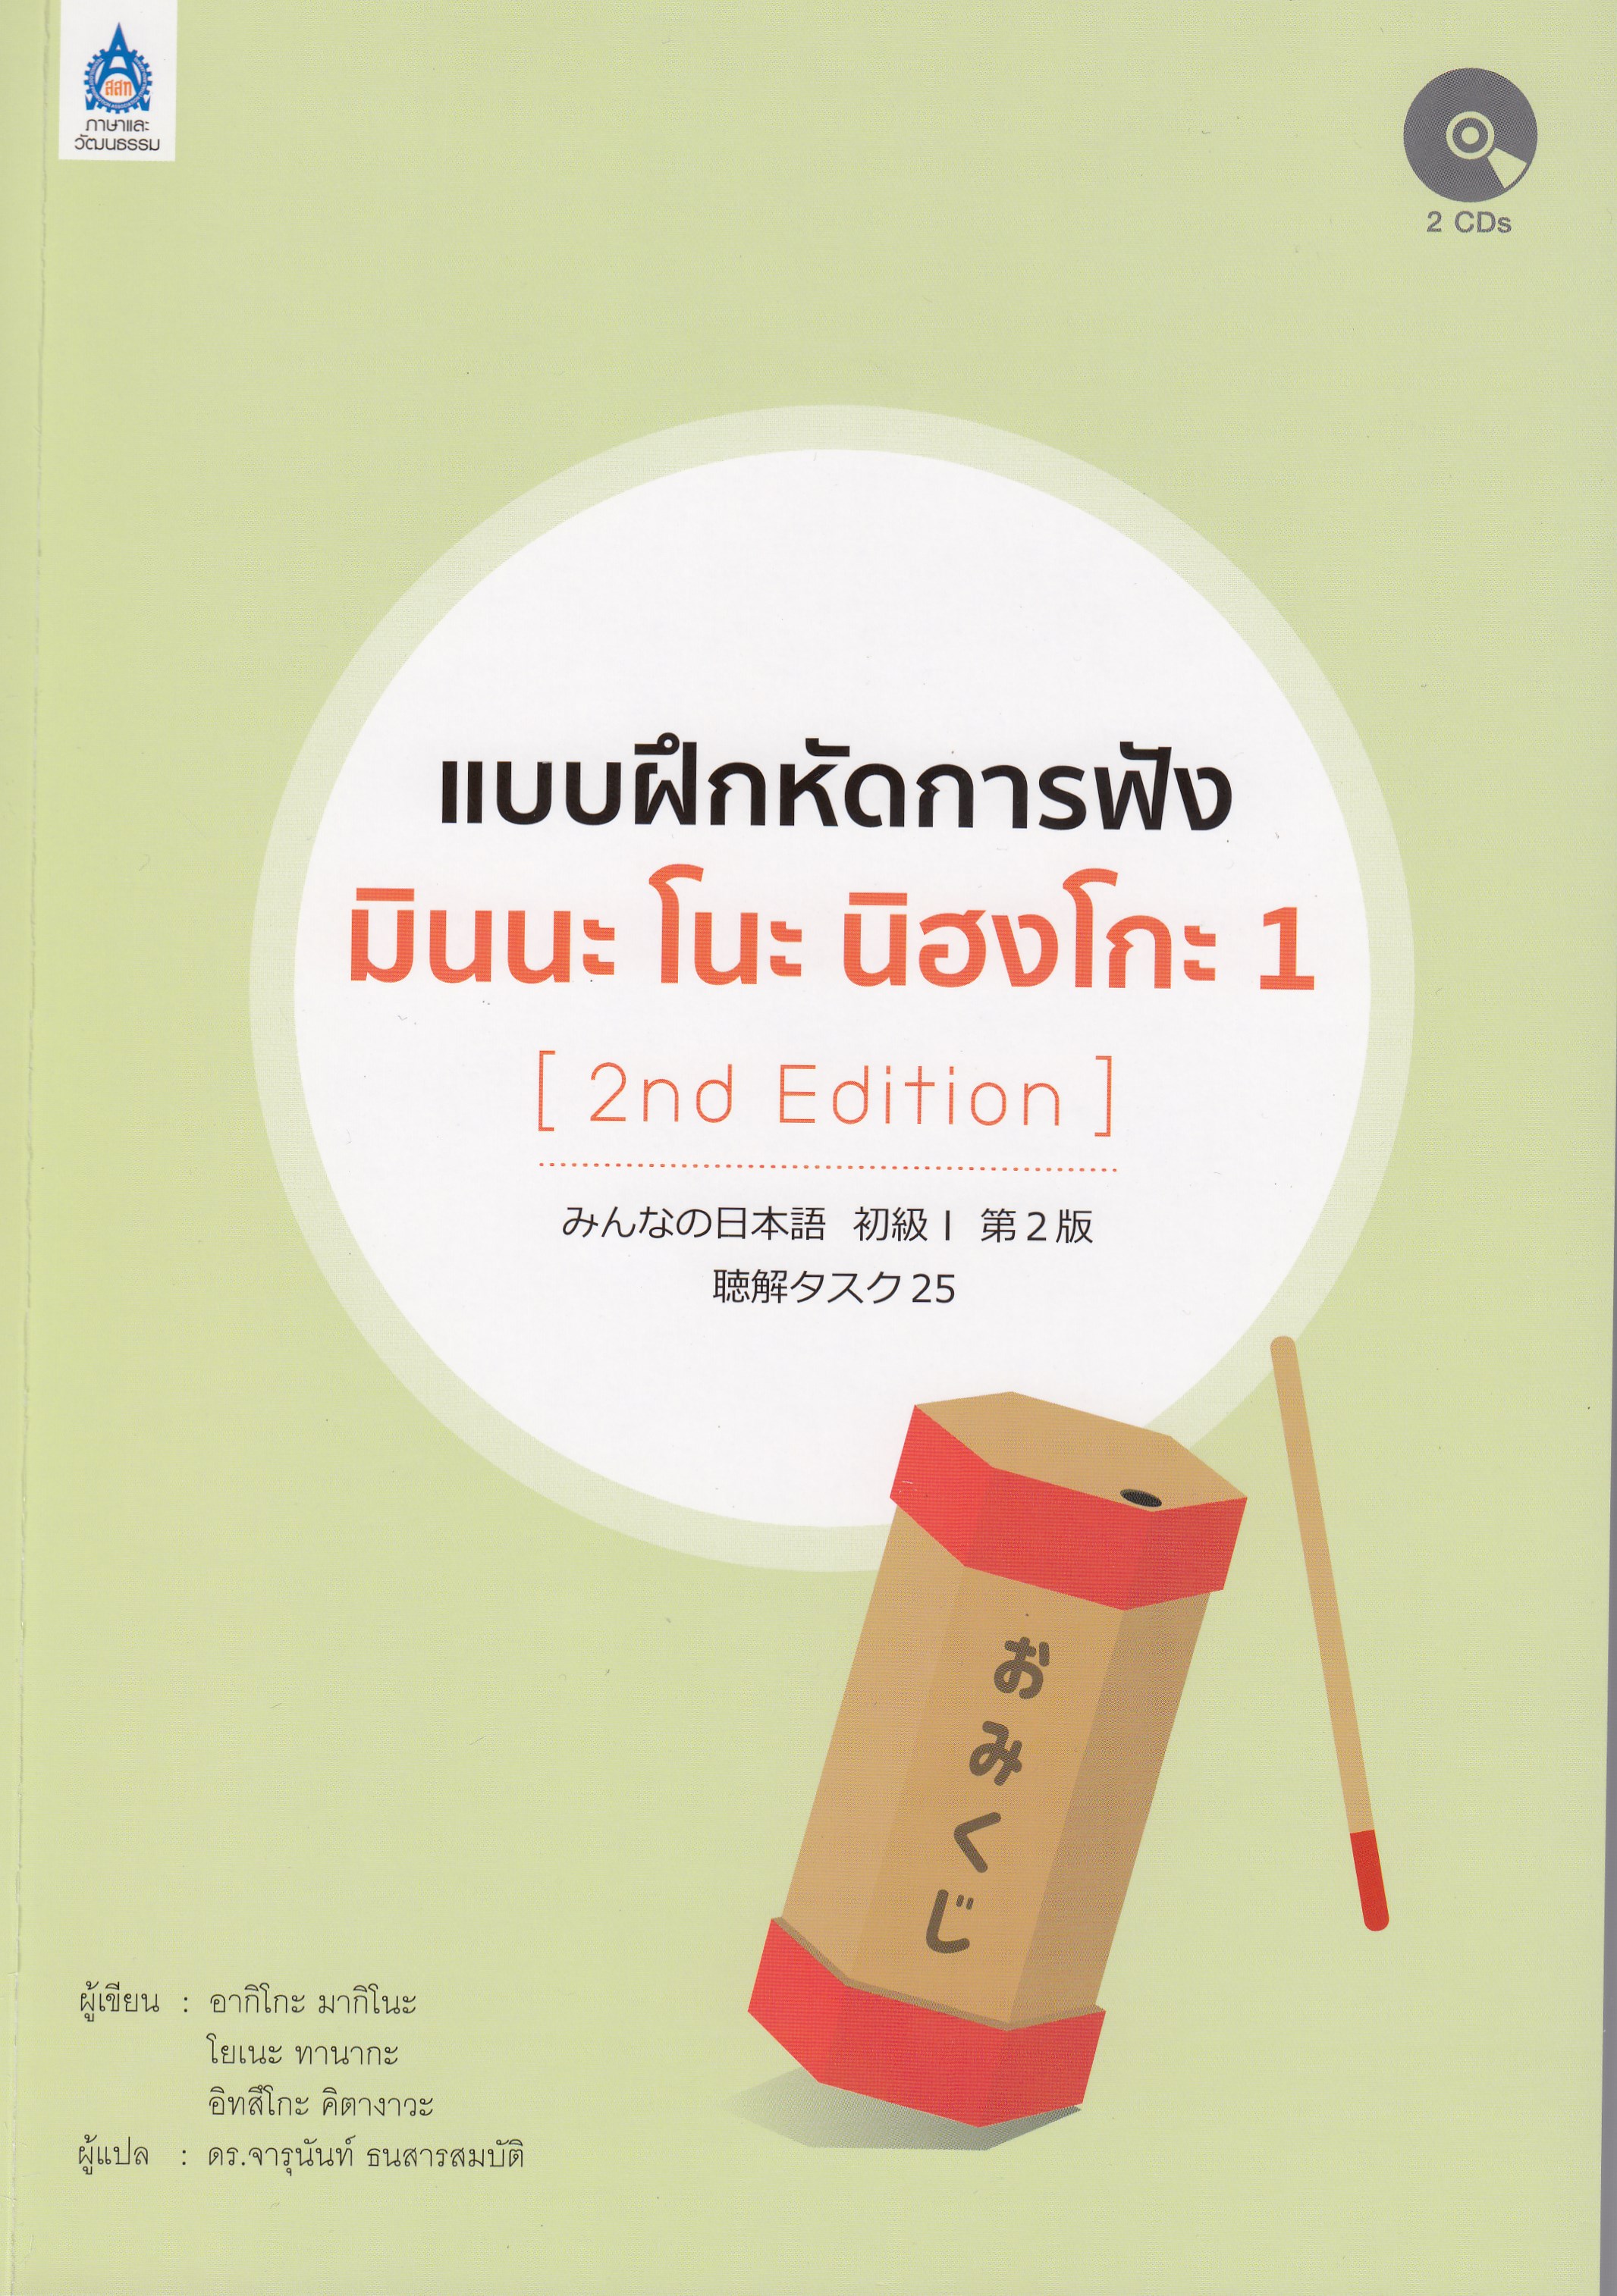 แบบฝึกหัดการฟัง มินนะ โนะ นิฮงโกะ 1+CD 2 แผ่น (2nd Edition)  by DK TODAY